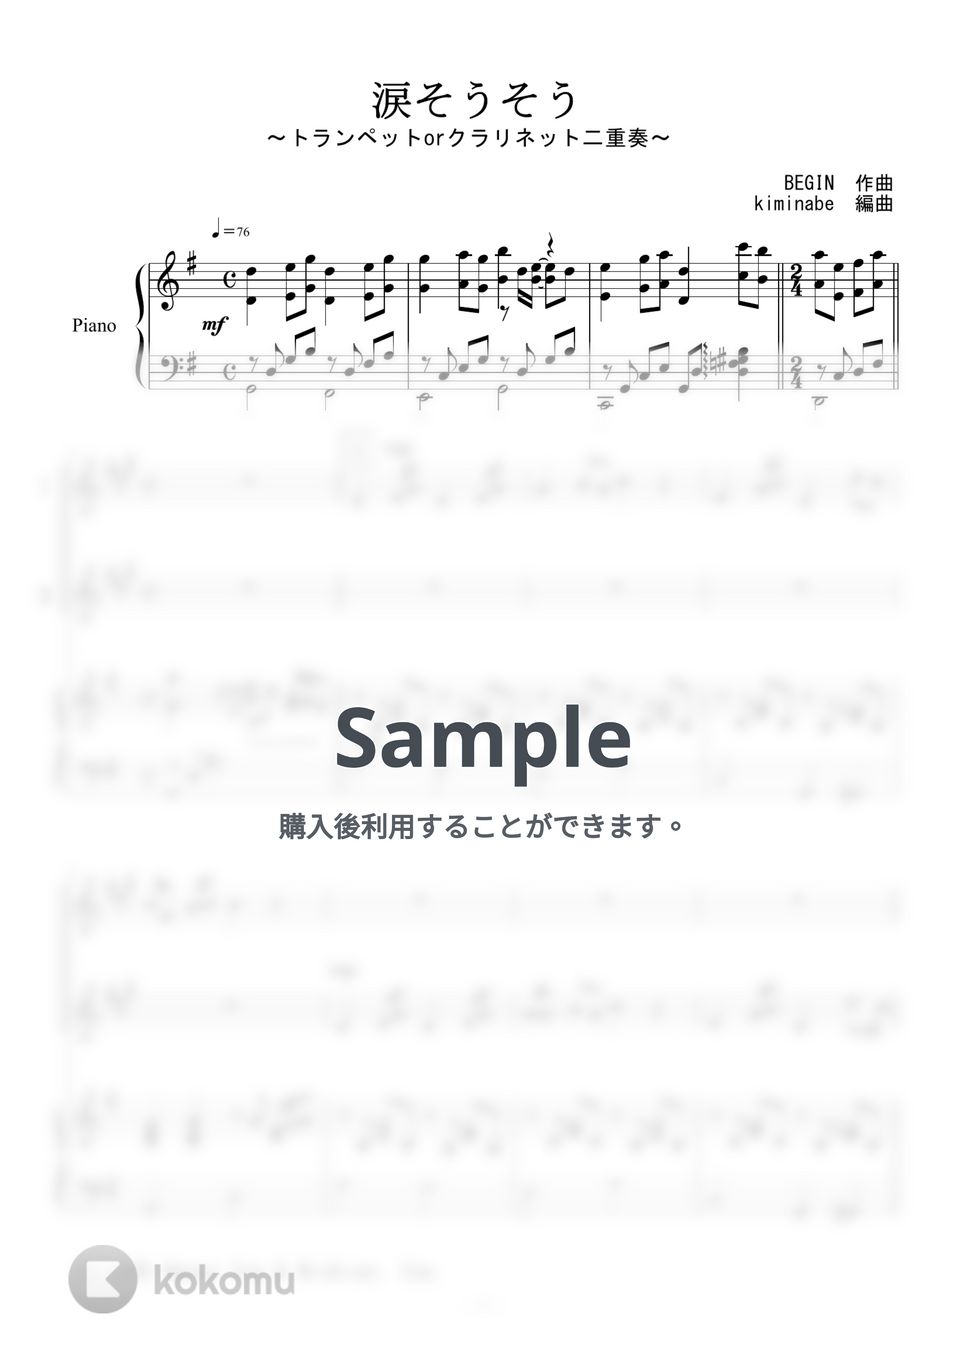 森山良子 - 涙そうそう (トランペットorクラリネット二重奏) by kiminabe